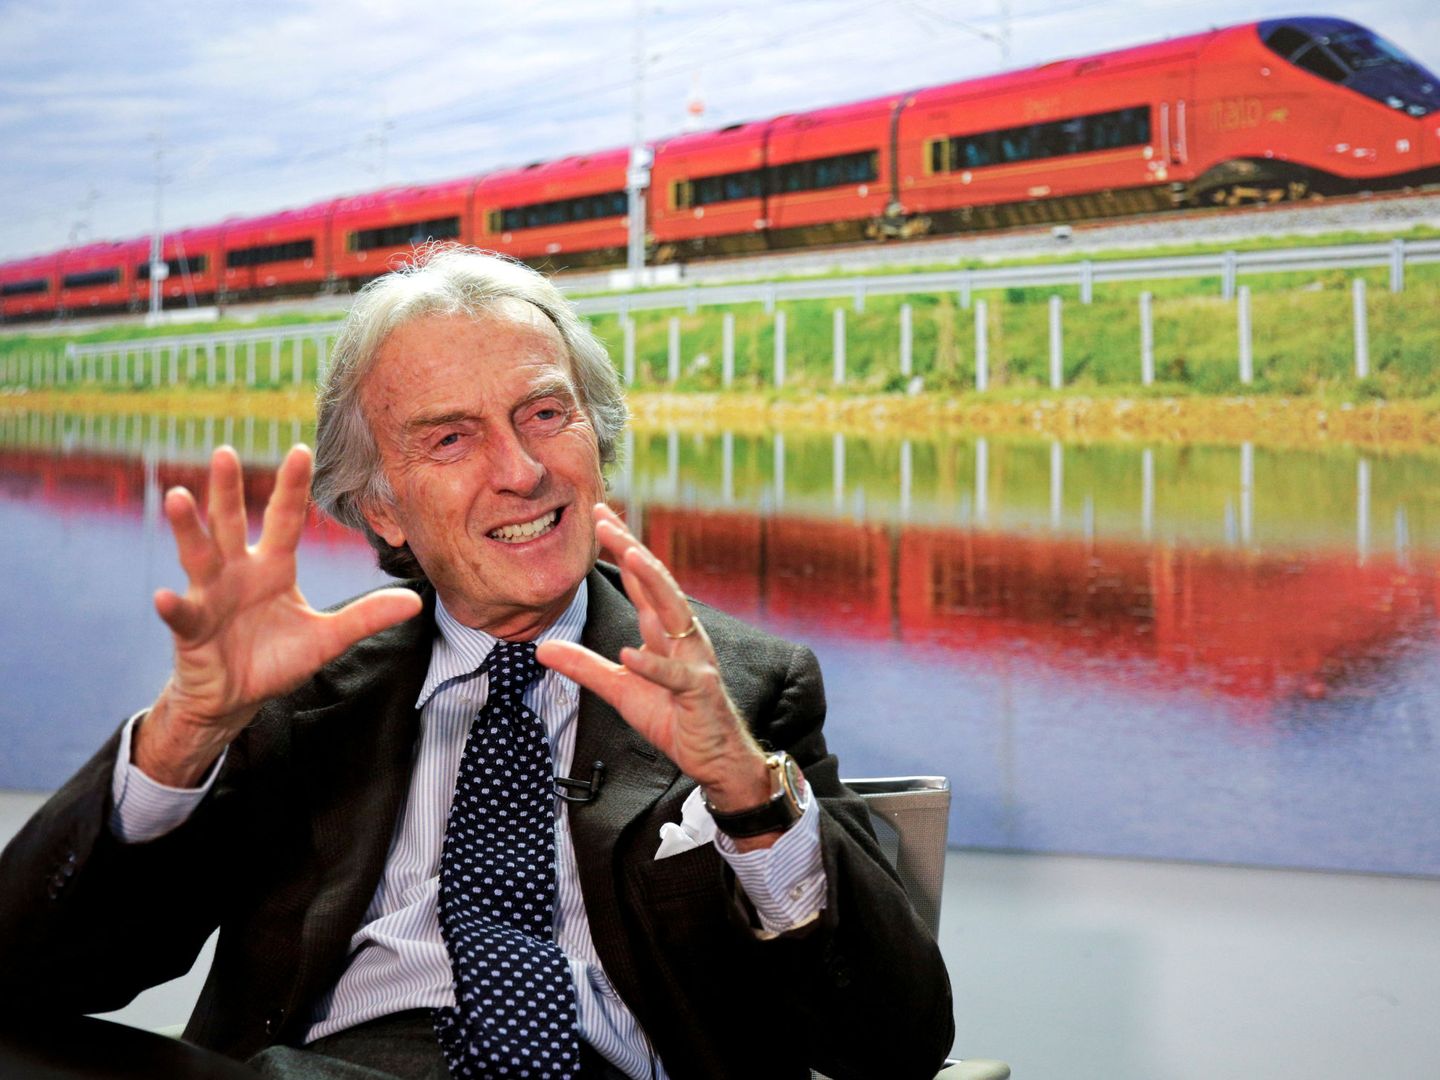 NTV, el operador italiano privado presidido por Luca Cordero di Montezemolo, ha anunciado la compra de 17 trenes Alstom para la expansión internacional. (Reuters)